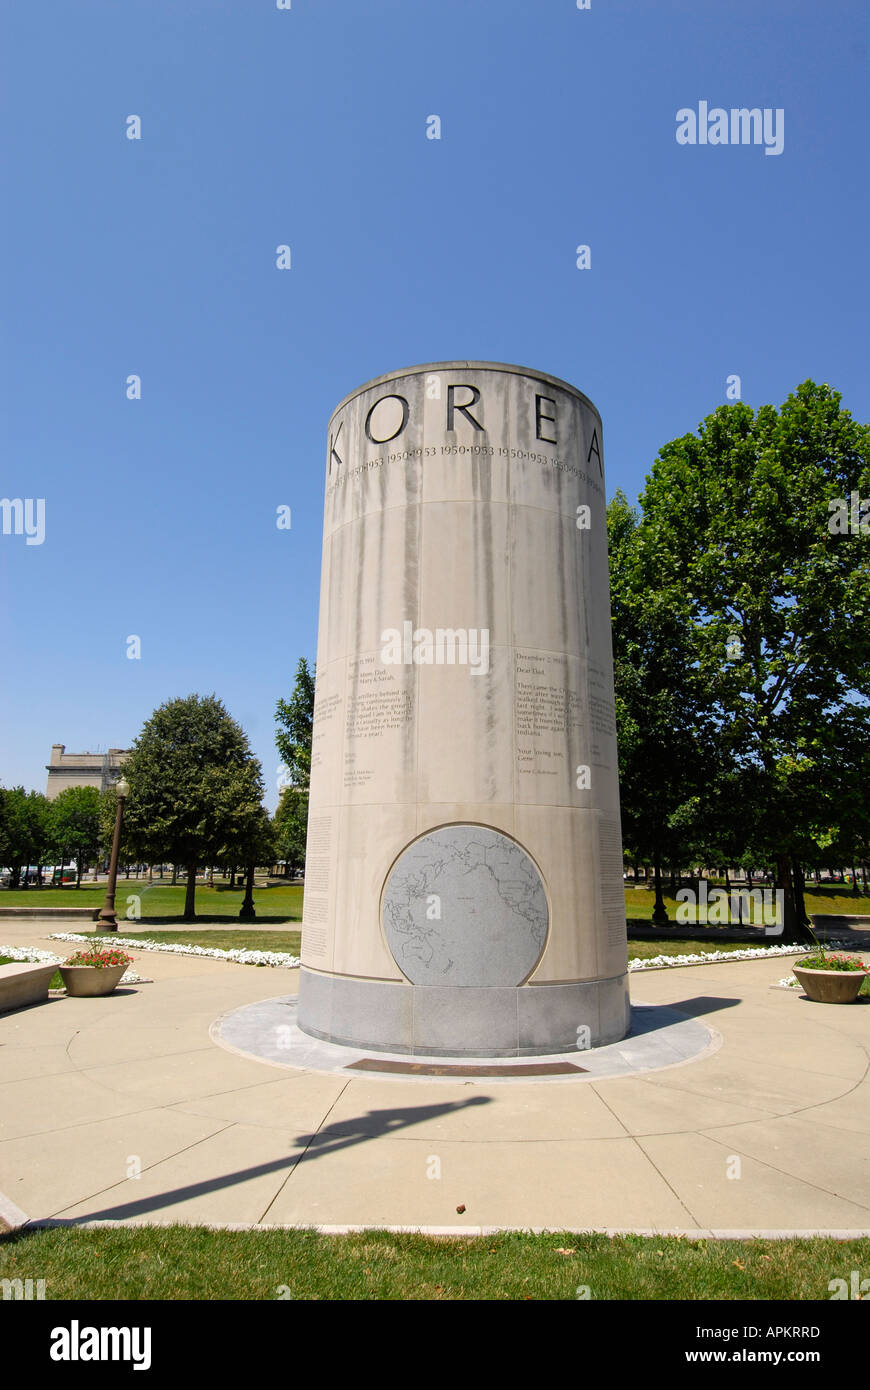 Guerre de Corée à l'Université Memorial Park de commémorer la guerre Histoire du centre-ville d'Indianapolis dans l'Indiana Banque D'Images